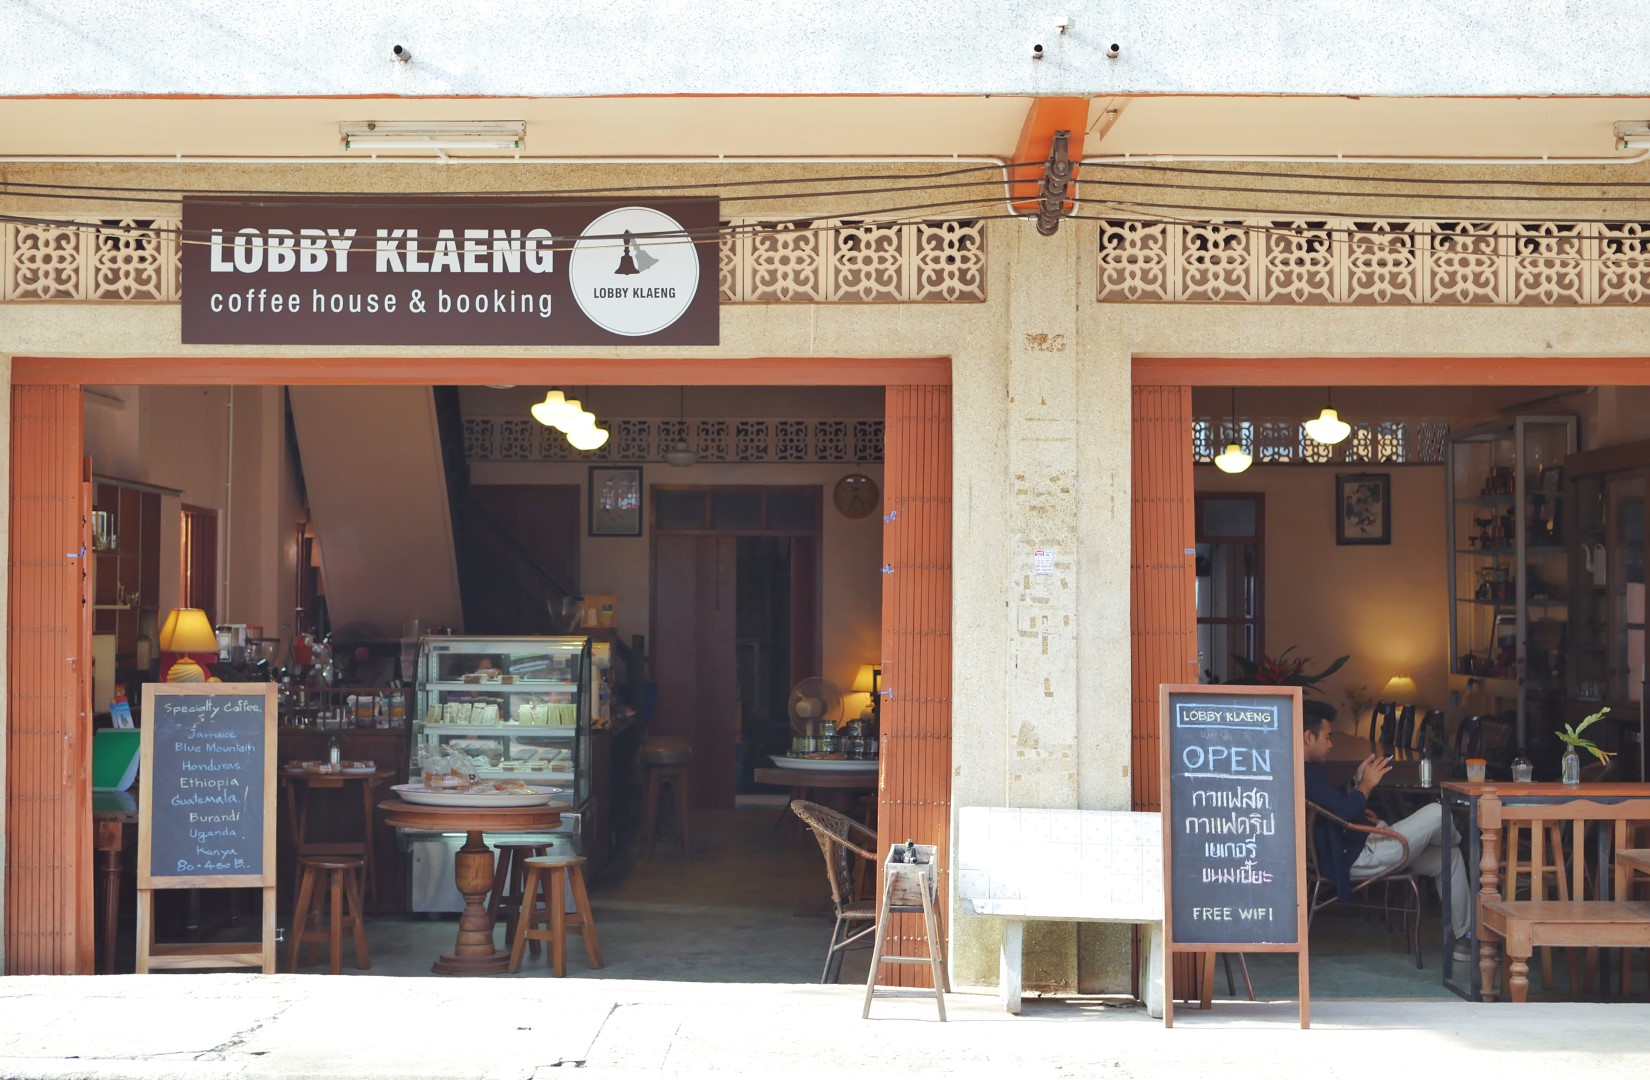 Lobby Klaeng ร้านกาแฟที่รินจากหัวใจ ความทันสมัยในบรรยากาศกรุงเก่า